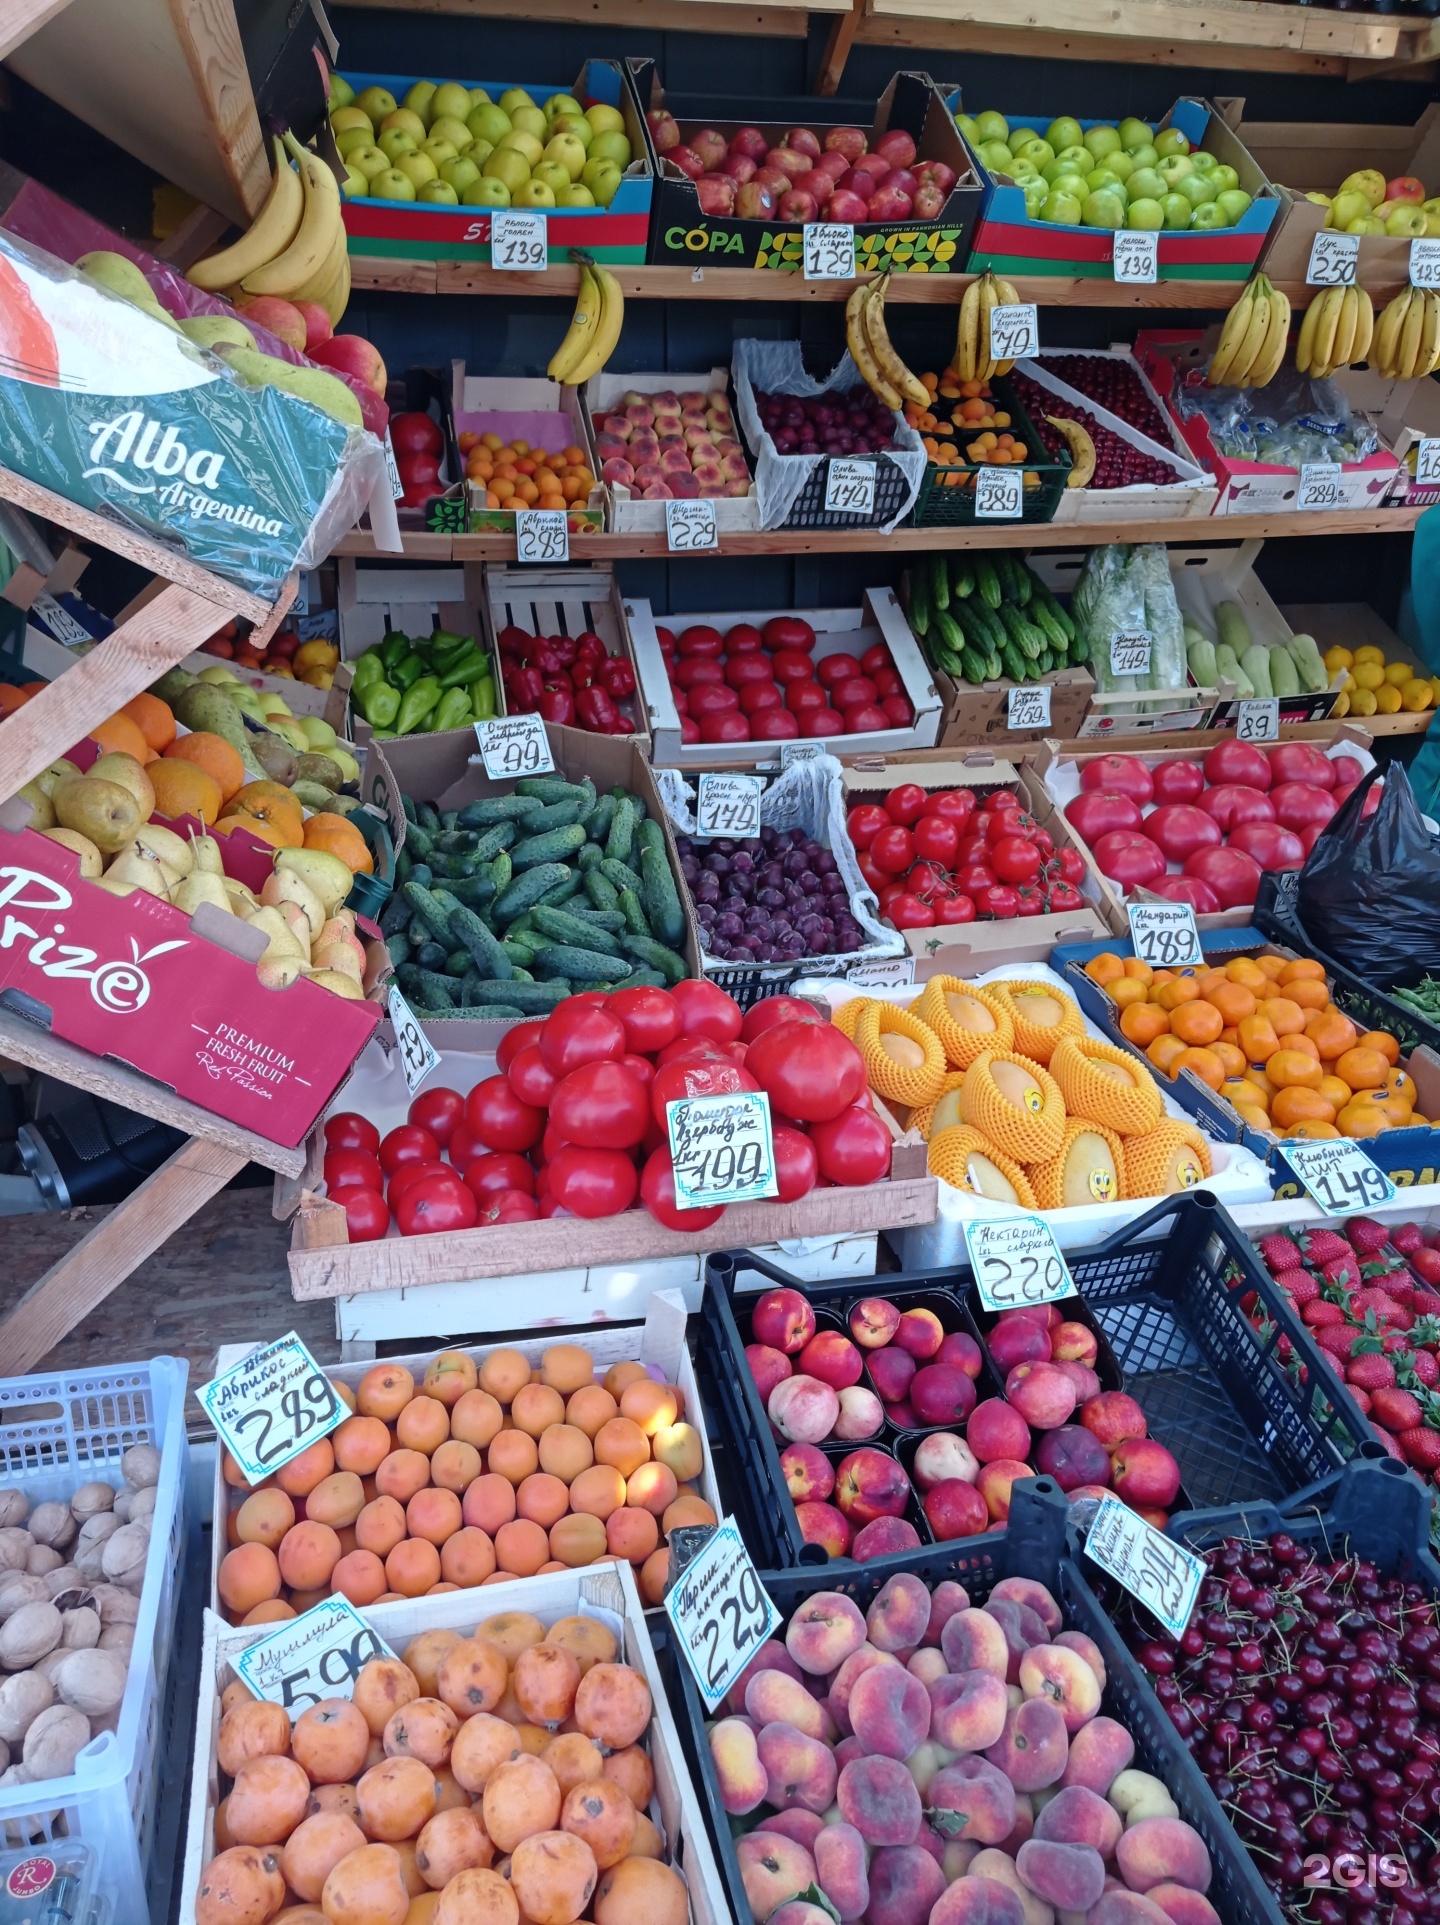 Плодовые спб. Магазин овощи фрукты. Рынок фруктов СПБ. Оптовый рынок овощей и фруктов в Питере. Меридиан фрукты СПБ.